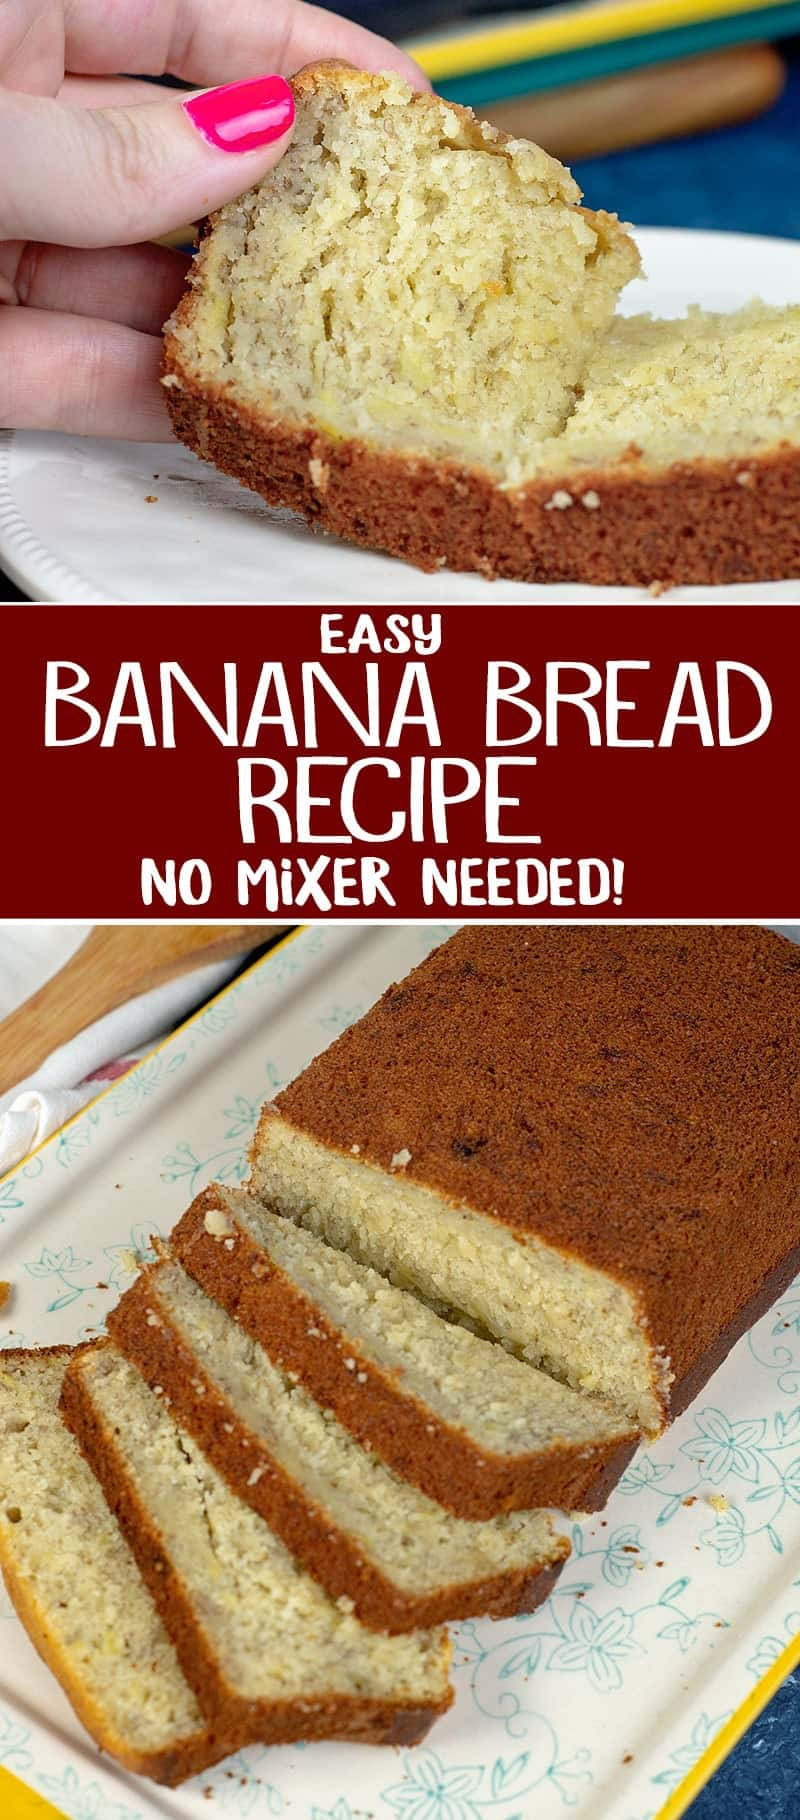 15 Ideas for No Mixer Banana Bread